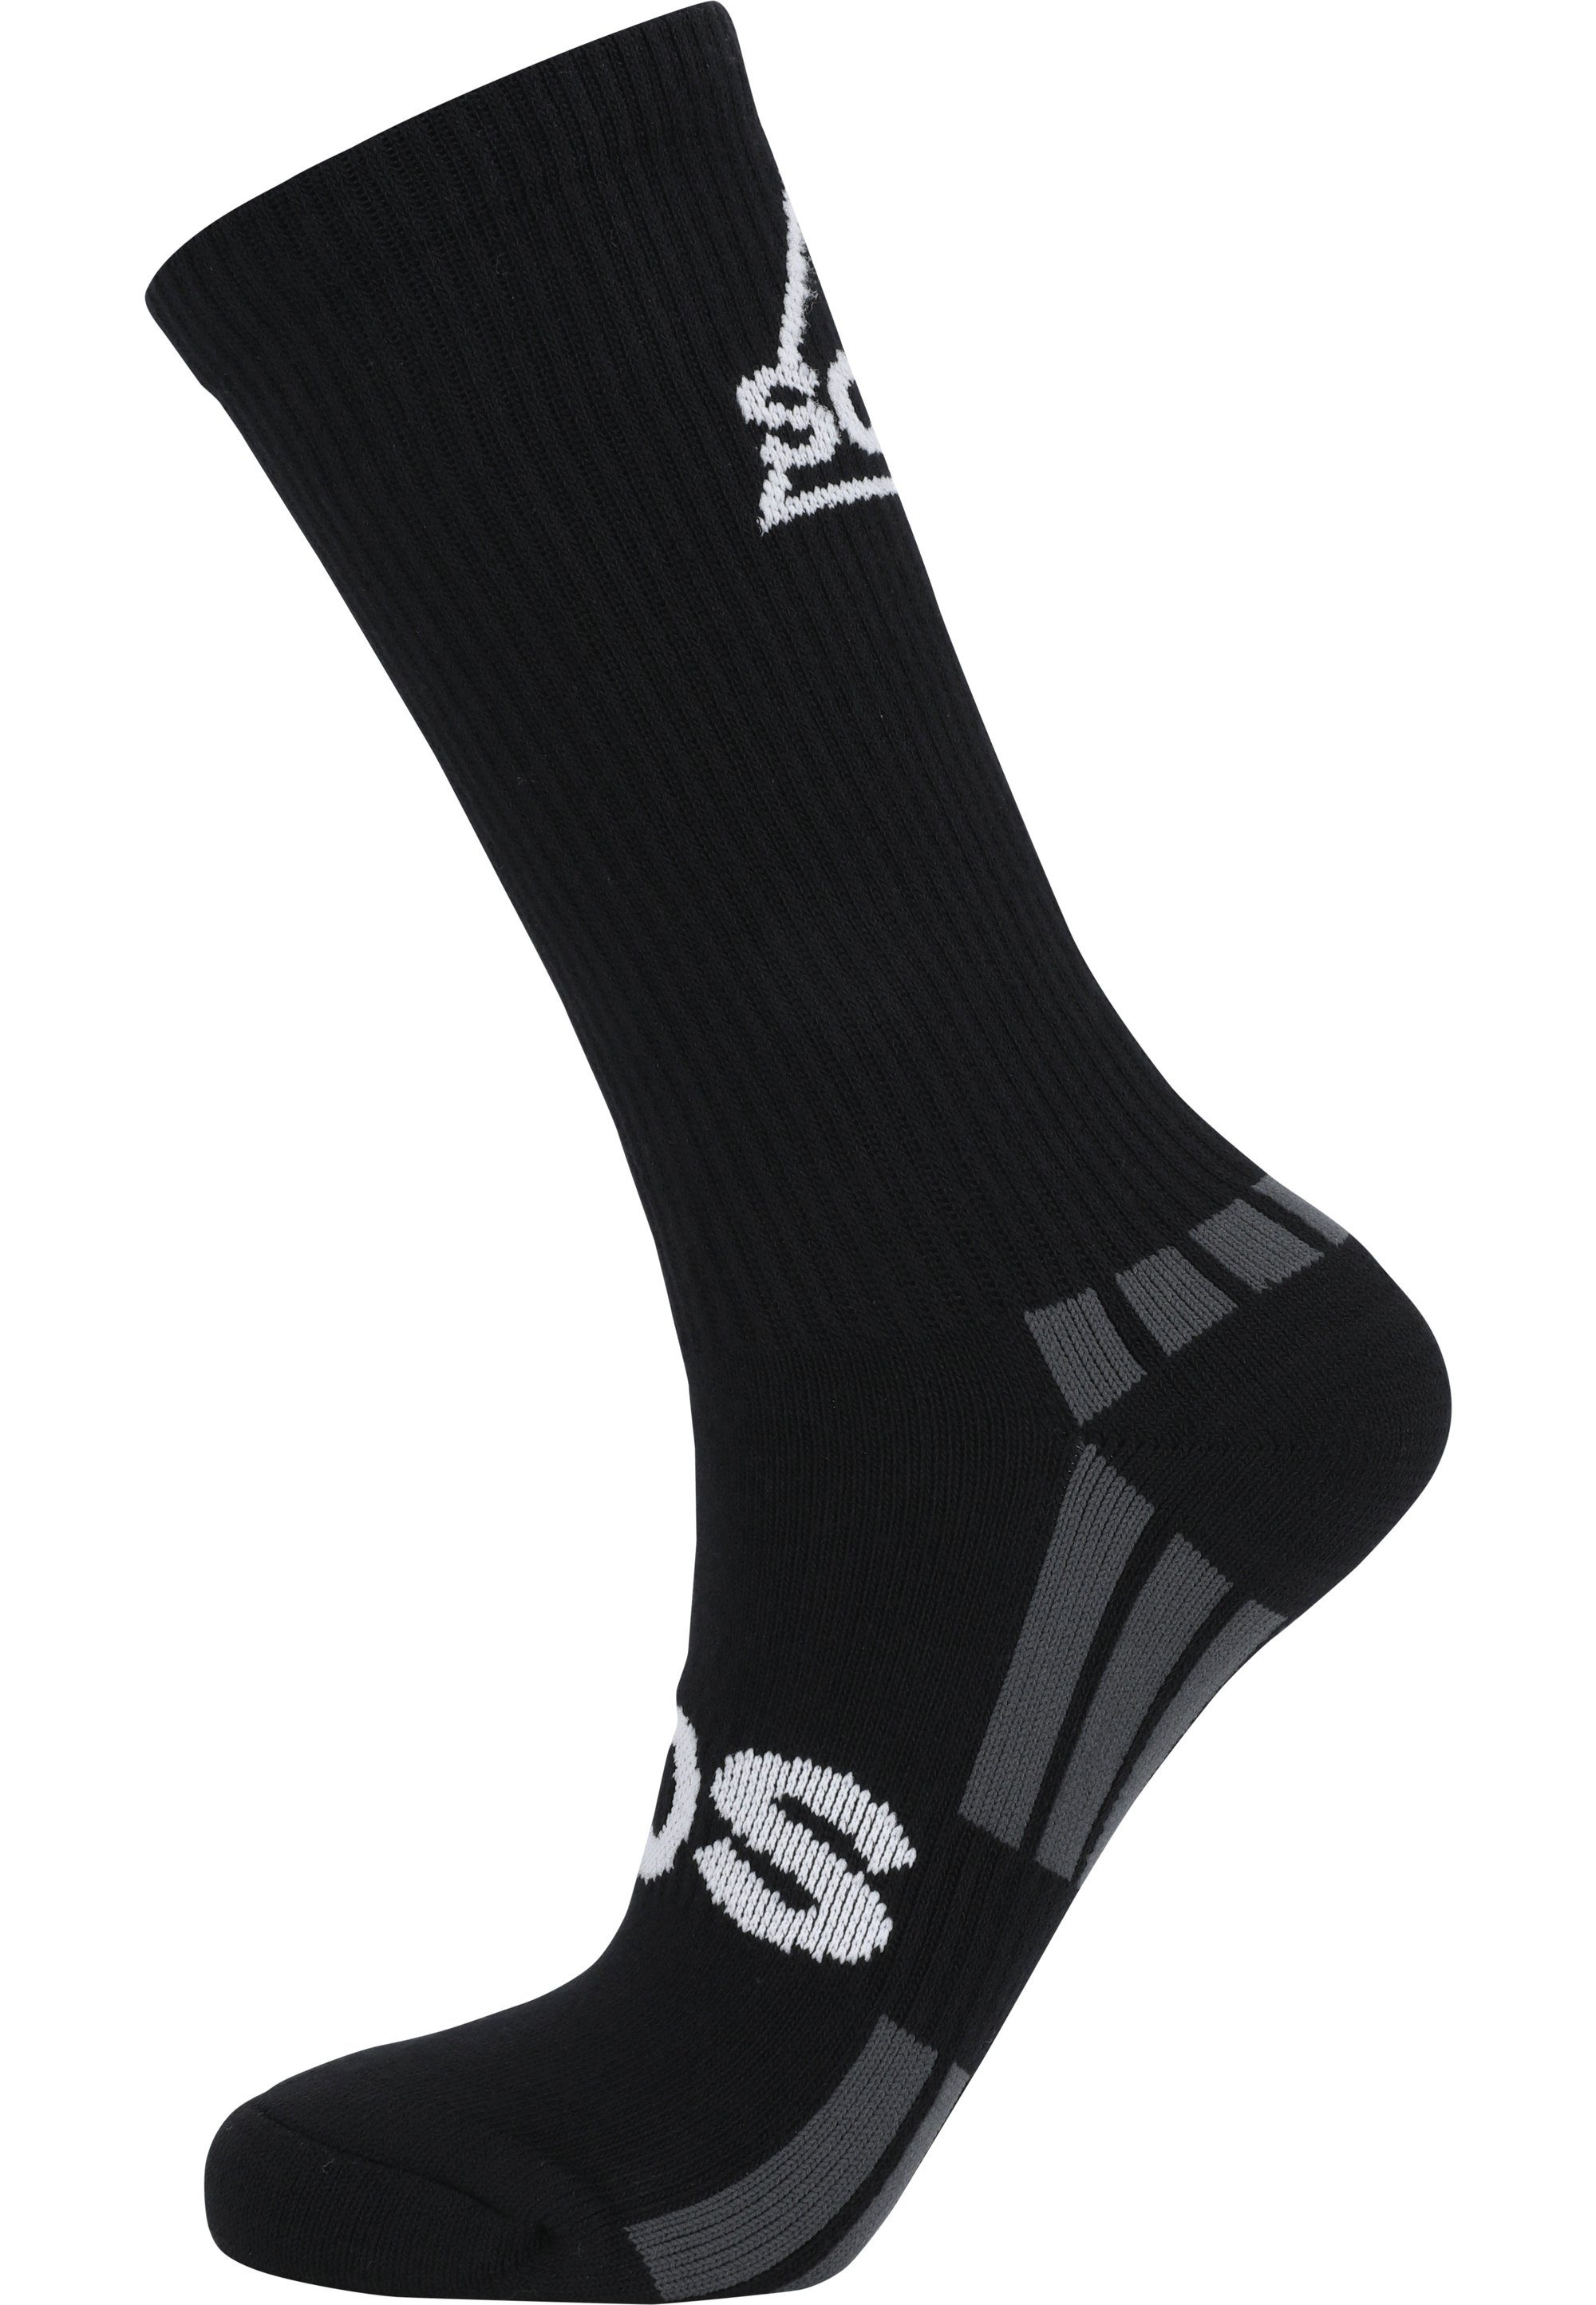 SOS Socken Levi aus weichem Material schwarz